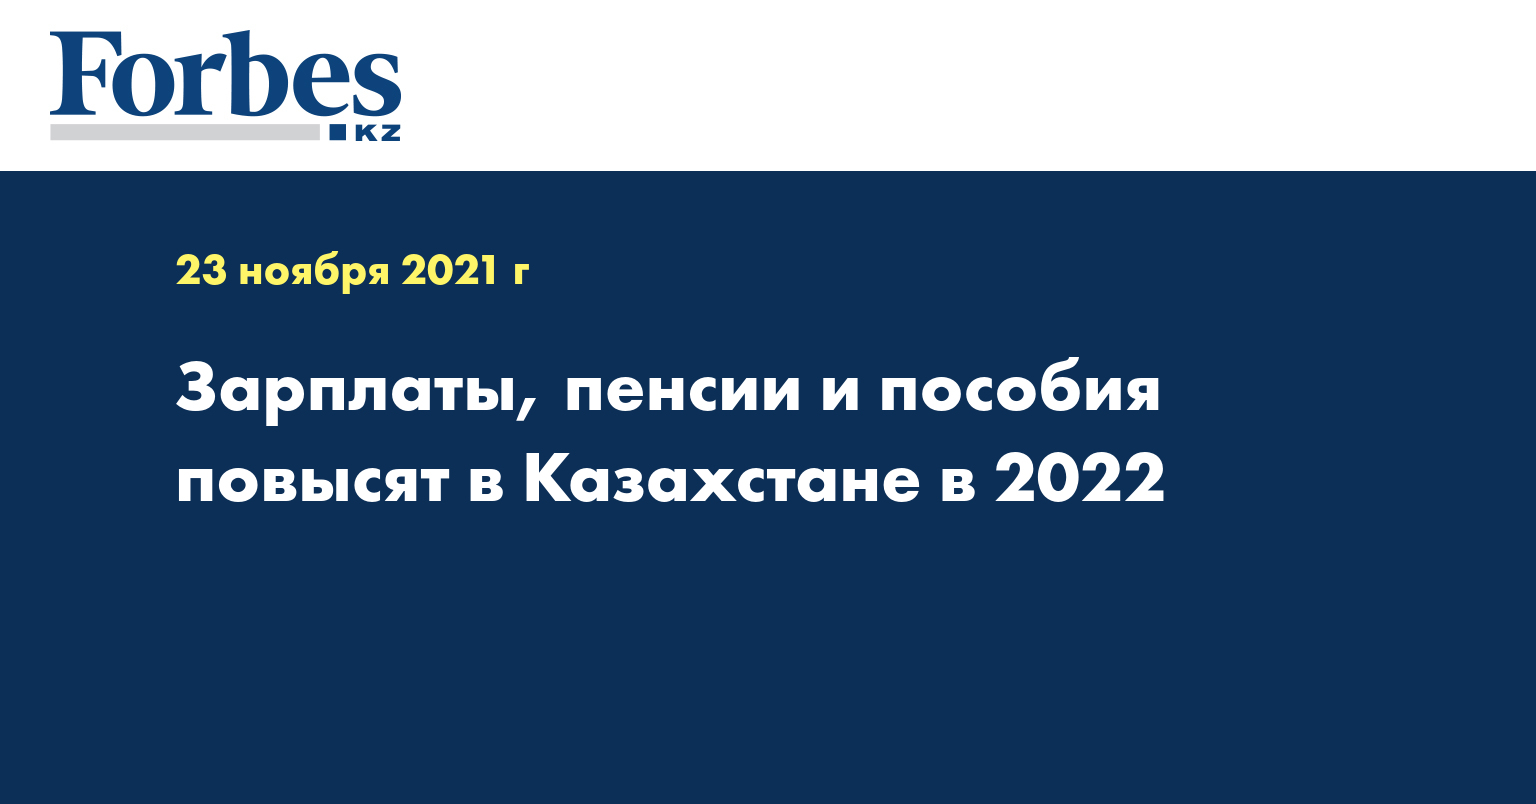 Зарплаты, пенсии и пособия повысят в Казахстане в 2022